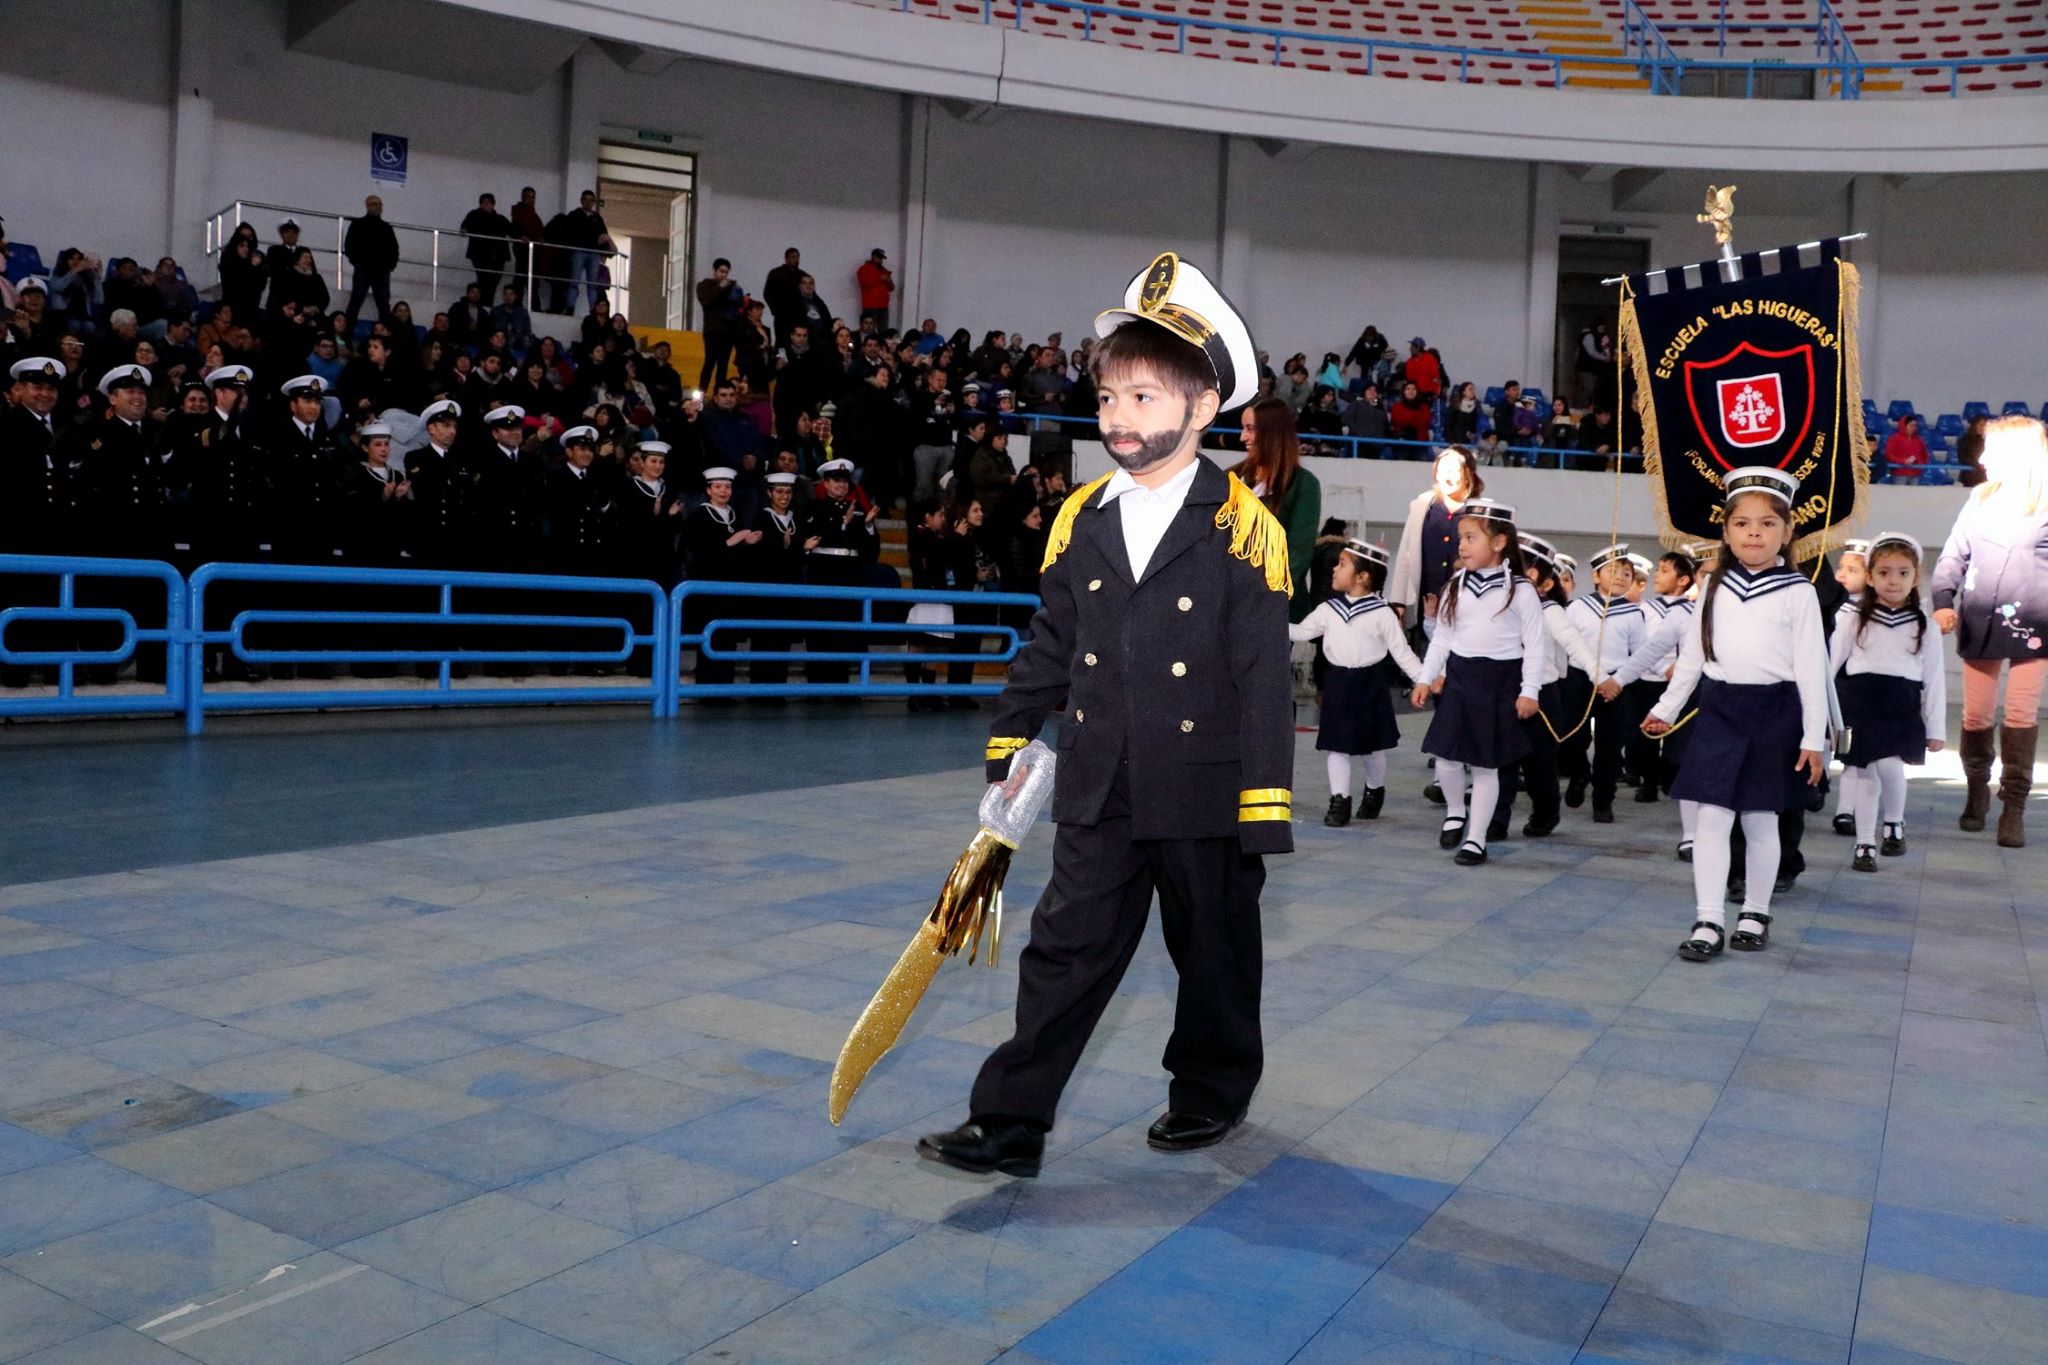 Preescolares desfilaron en honor a las glorias navales